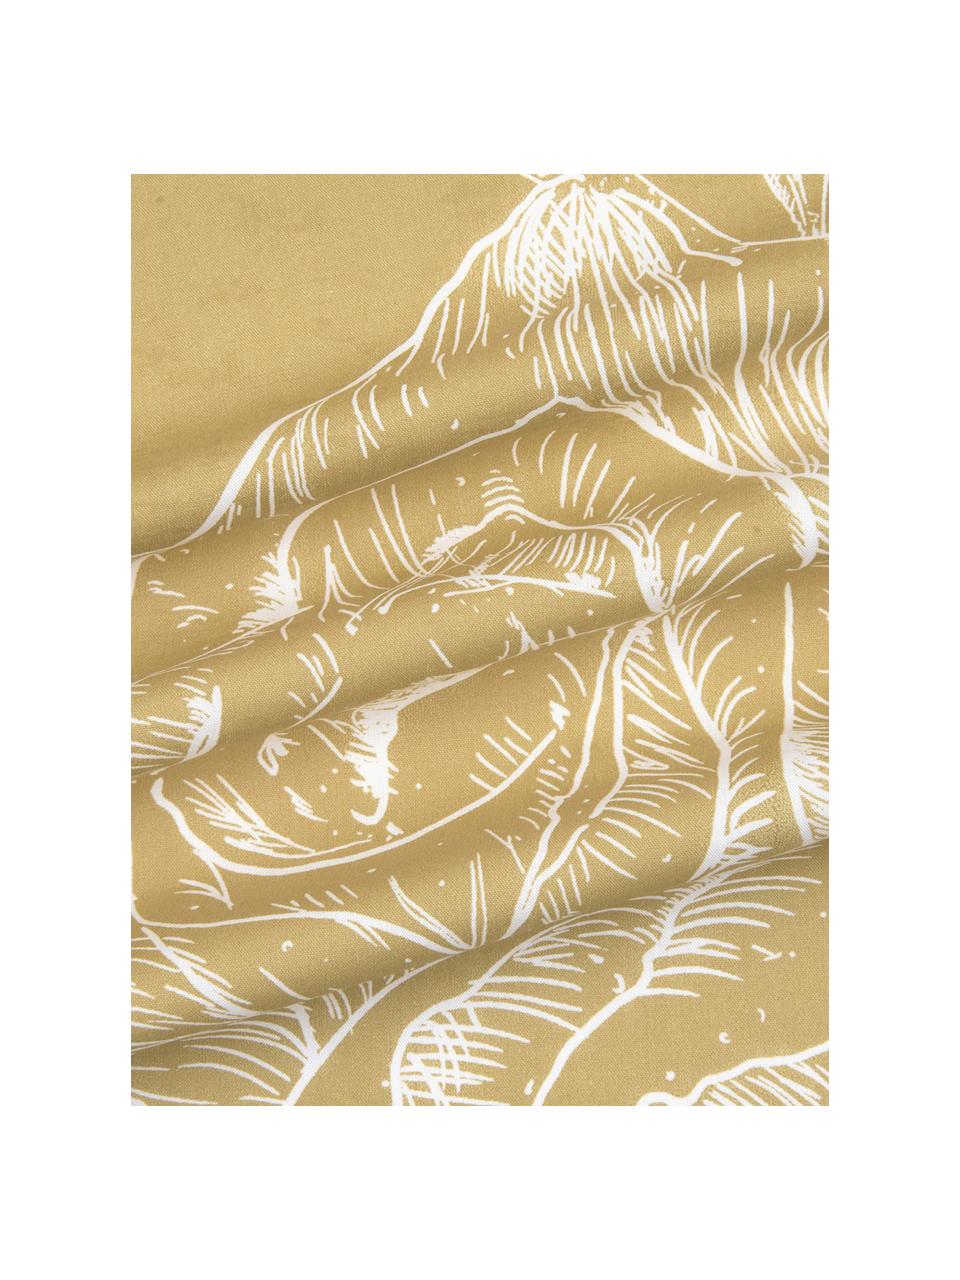 Baumwollperkal-Bettwäsche Keno mit Blumenprint, Webart: Perkal Fadendichte 180 TC, Senfgelb, Weiß, 135 x 200 cm + 1 Kissen 80 x 80 cm